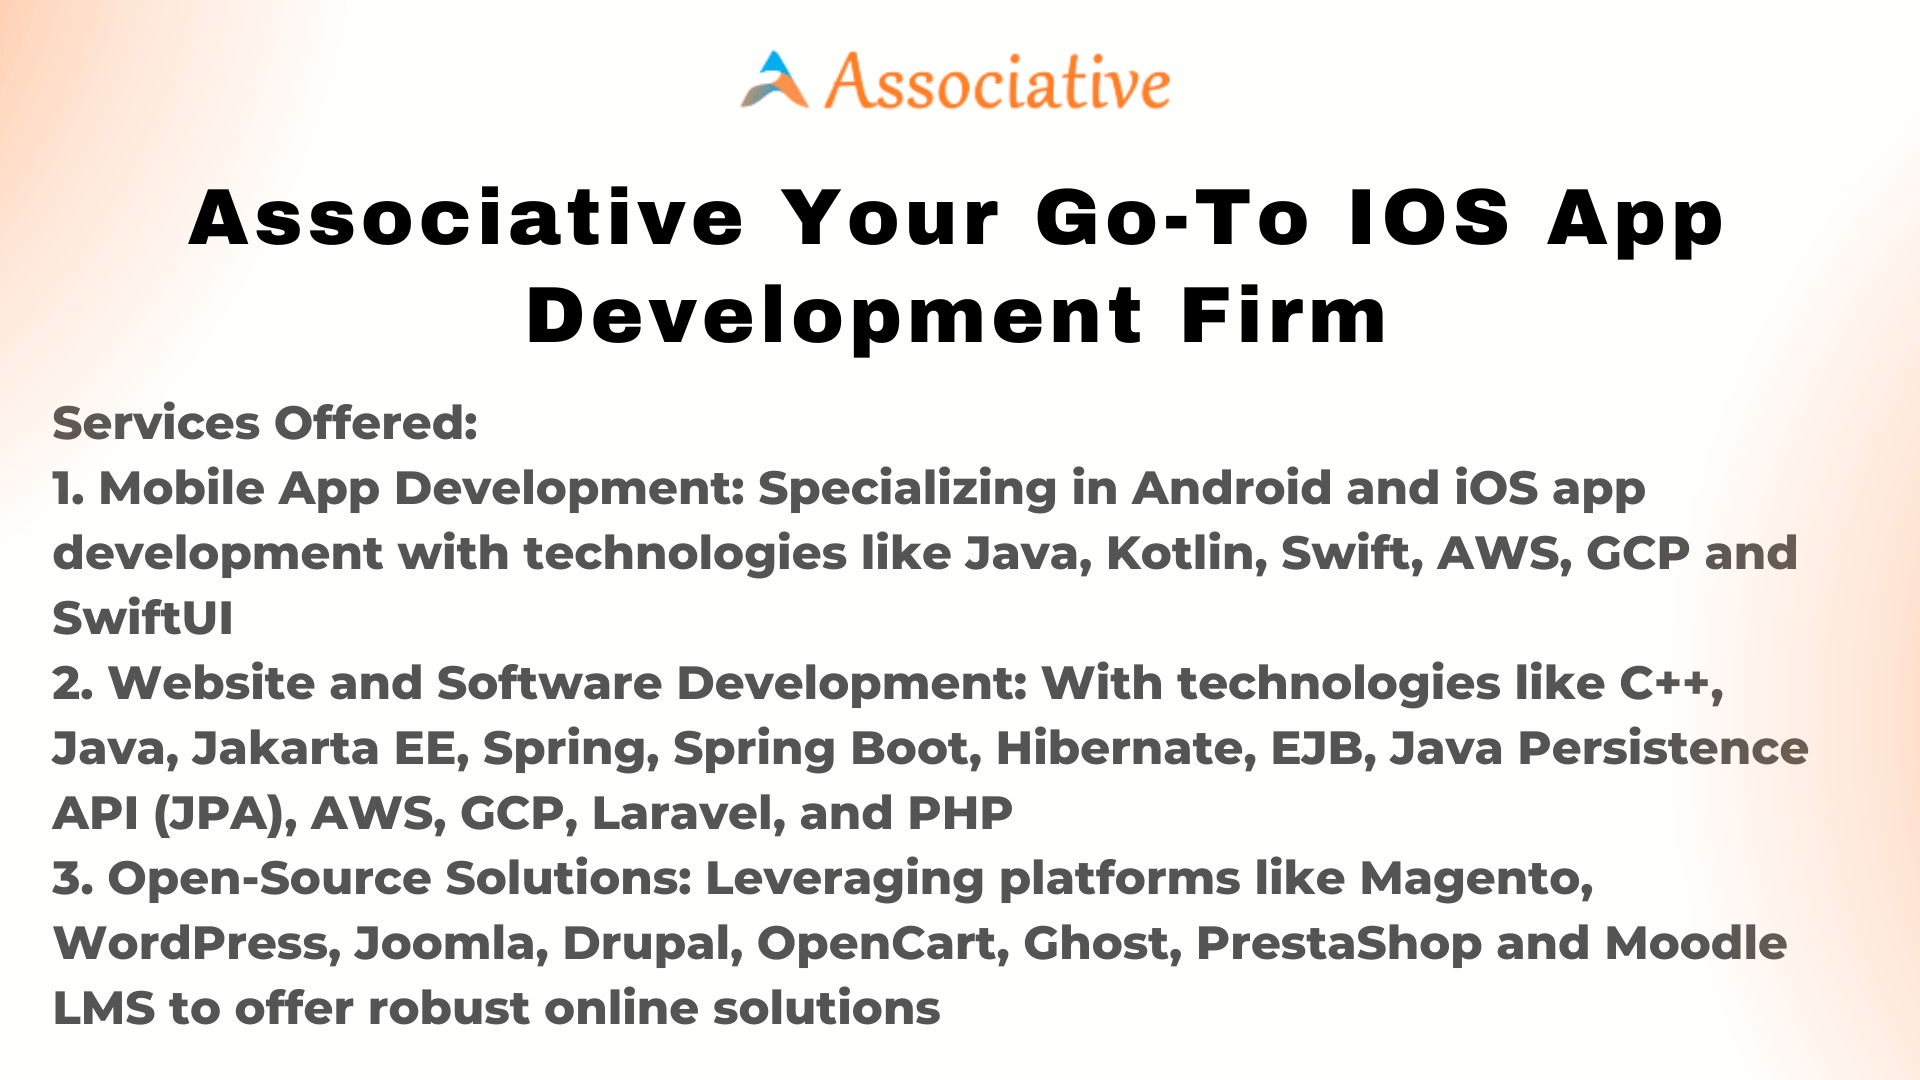 Associative Your Go-To iOS App Development Firm